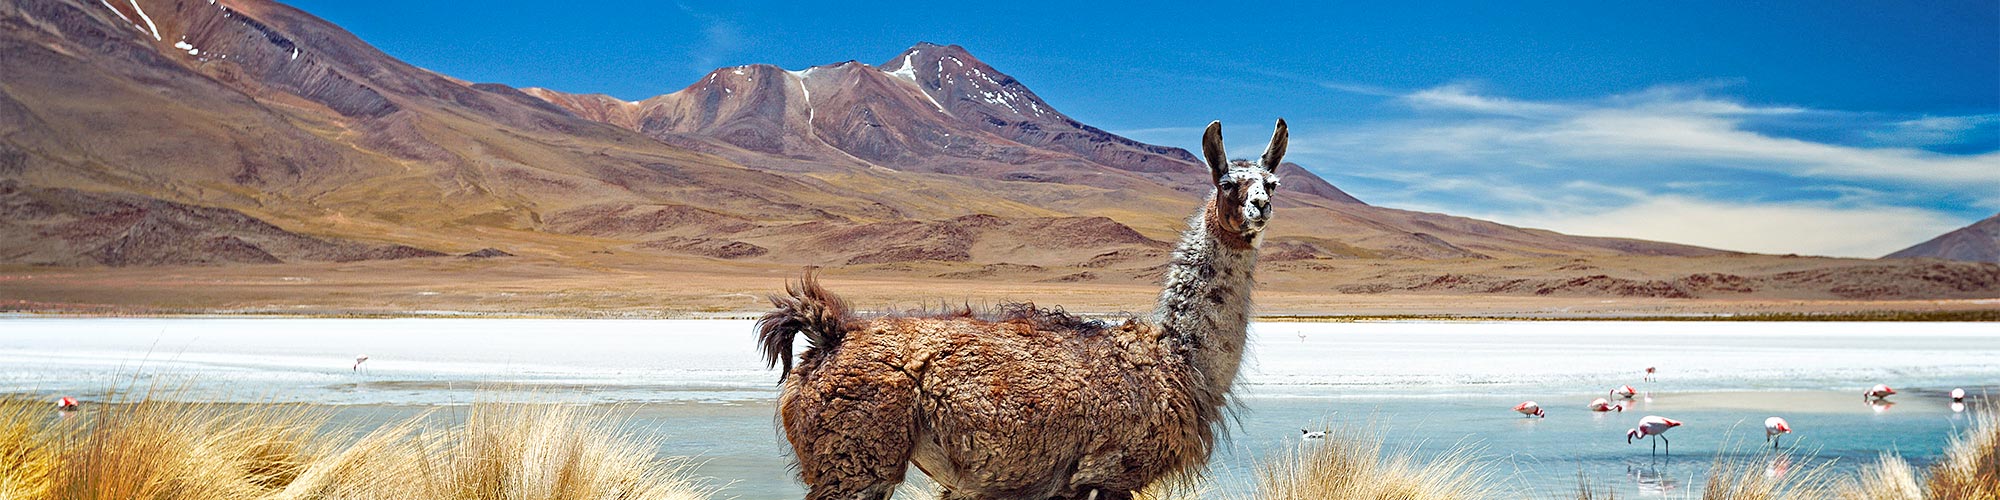 Trekking zu den Salzwsten, Lagunen, Vulkanen und dem Titicacasee - Trekking in Bolivien.